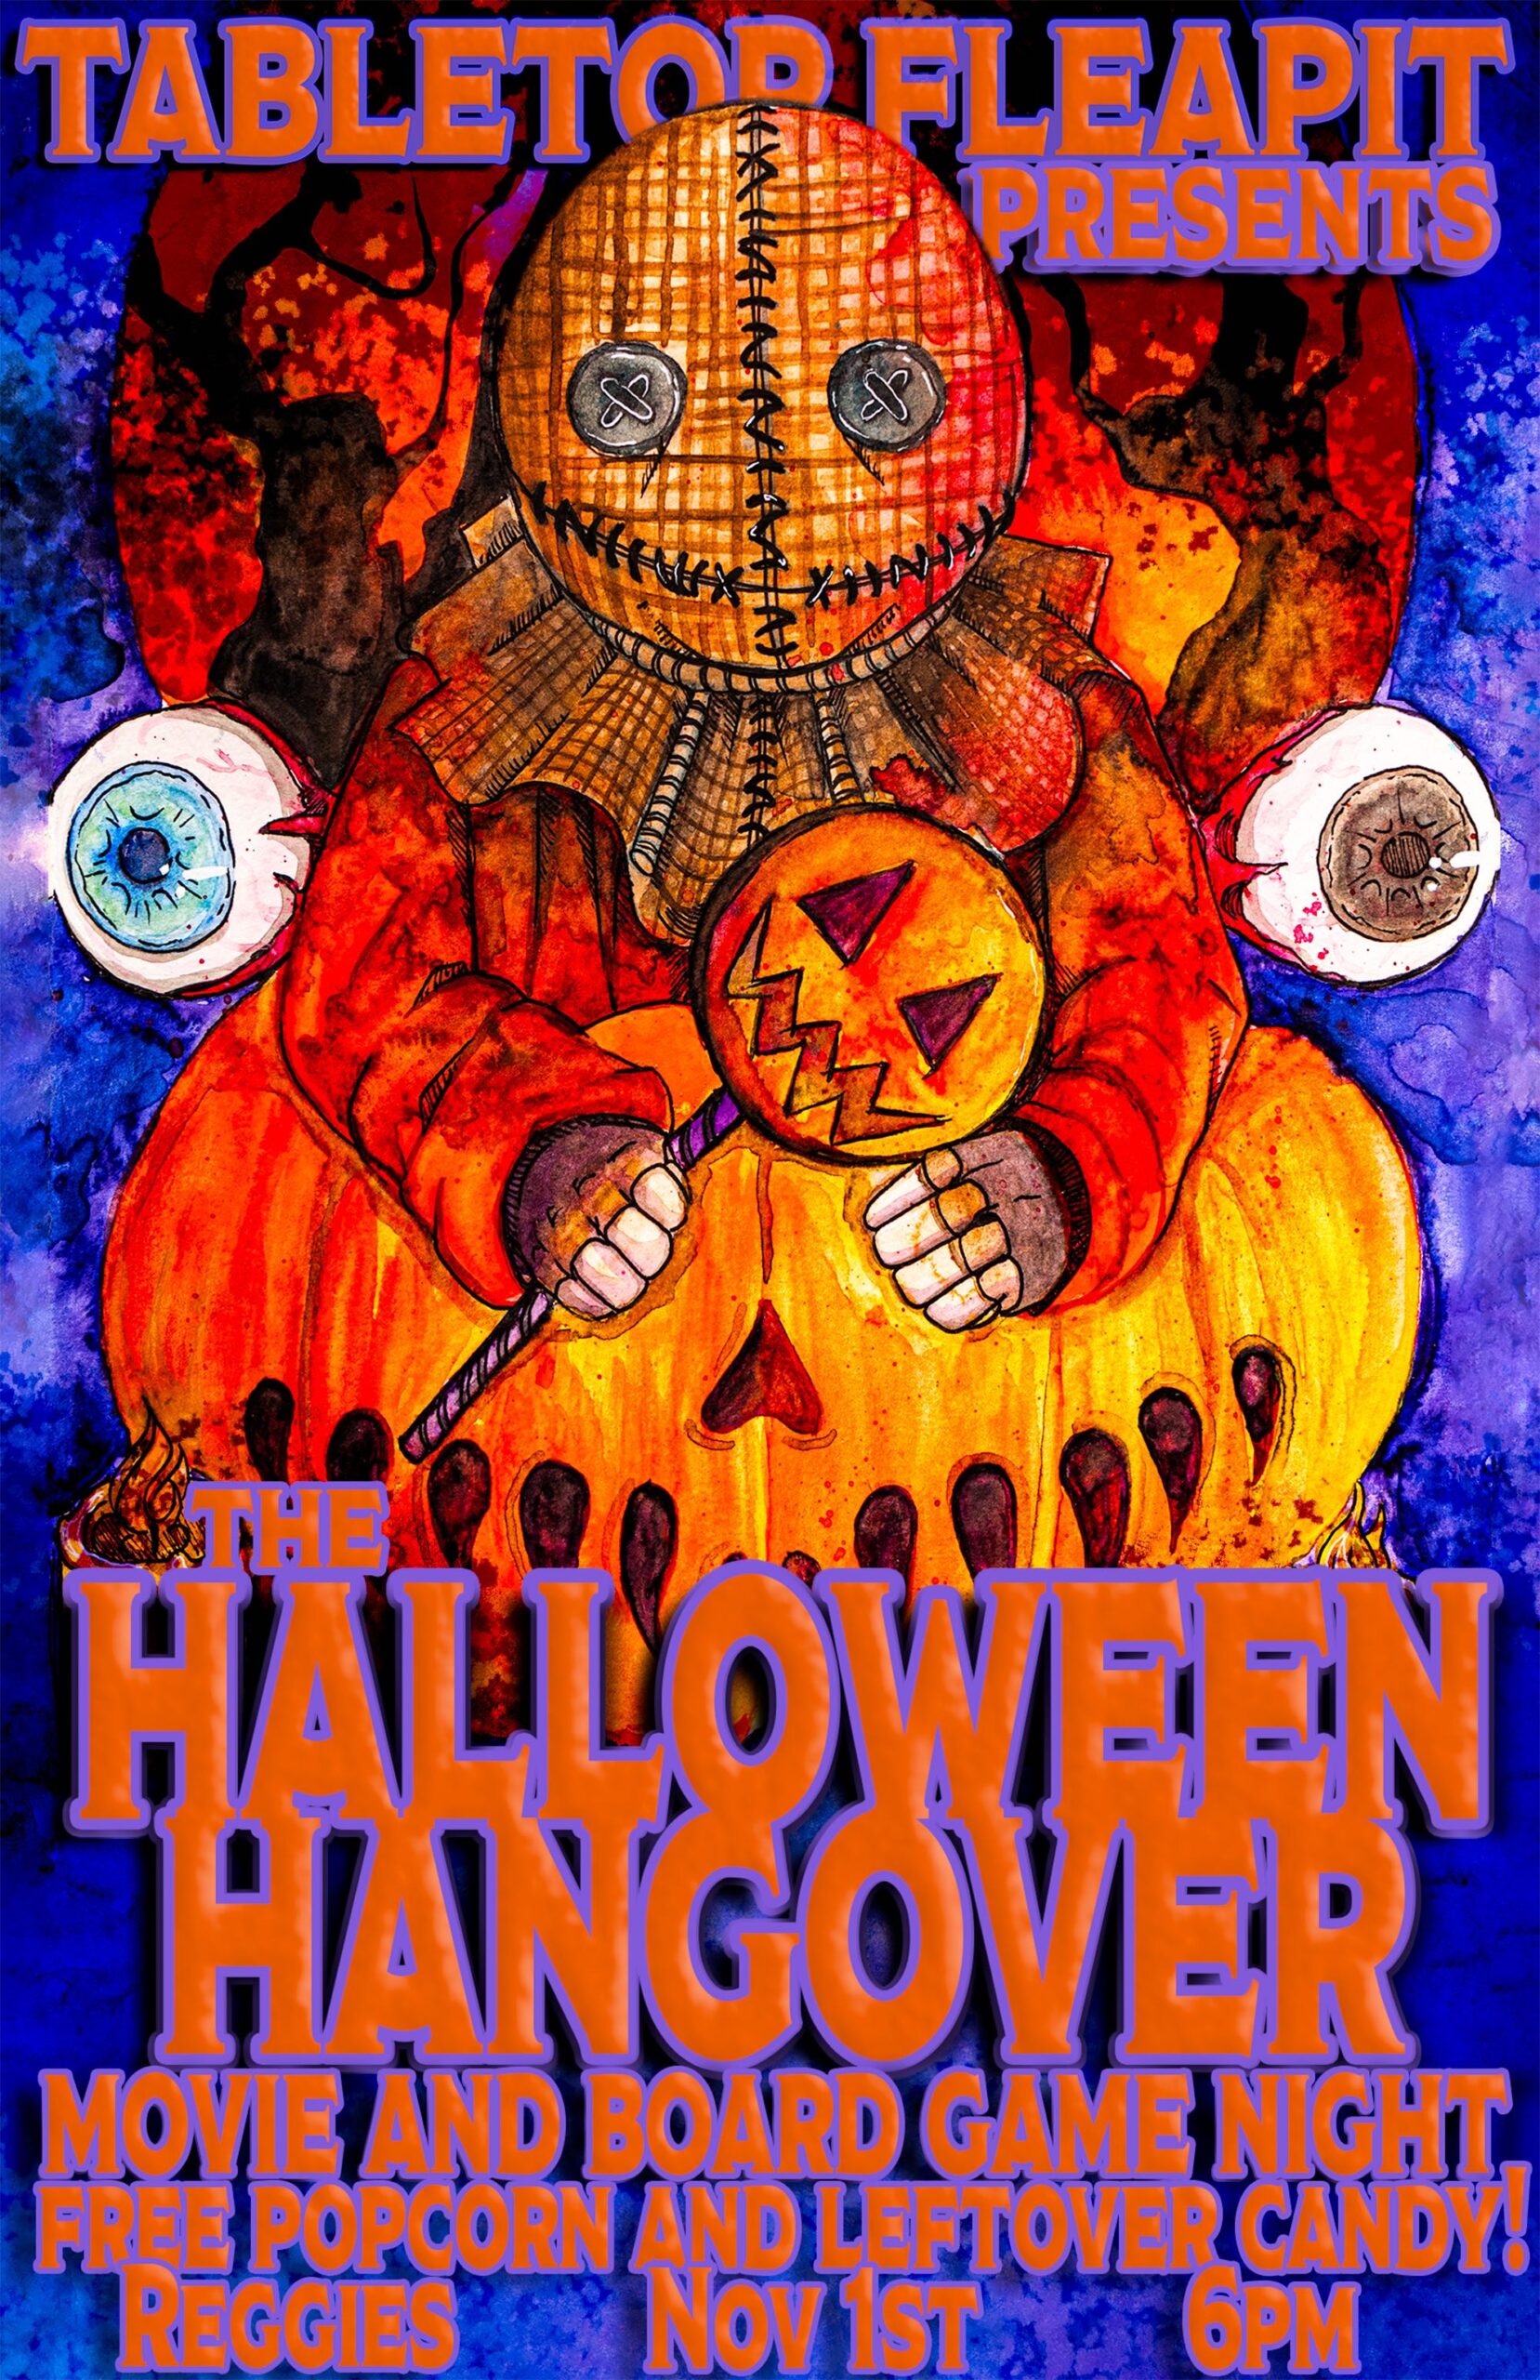 Tabletop Fleapit Halloween Hangover